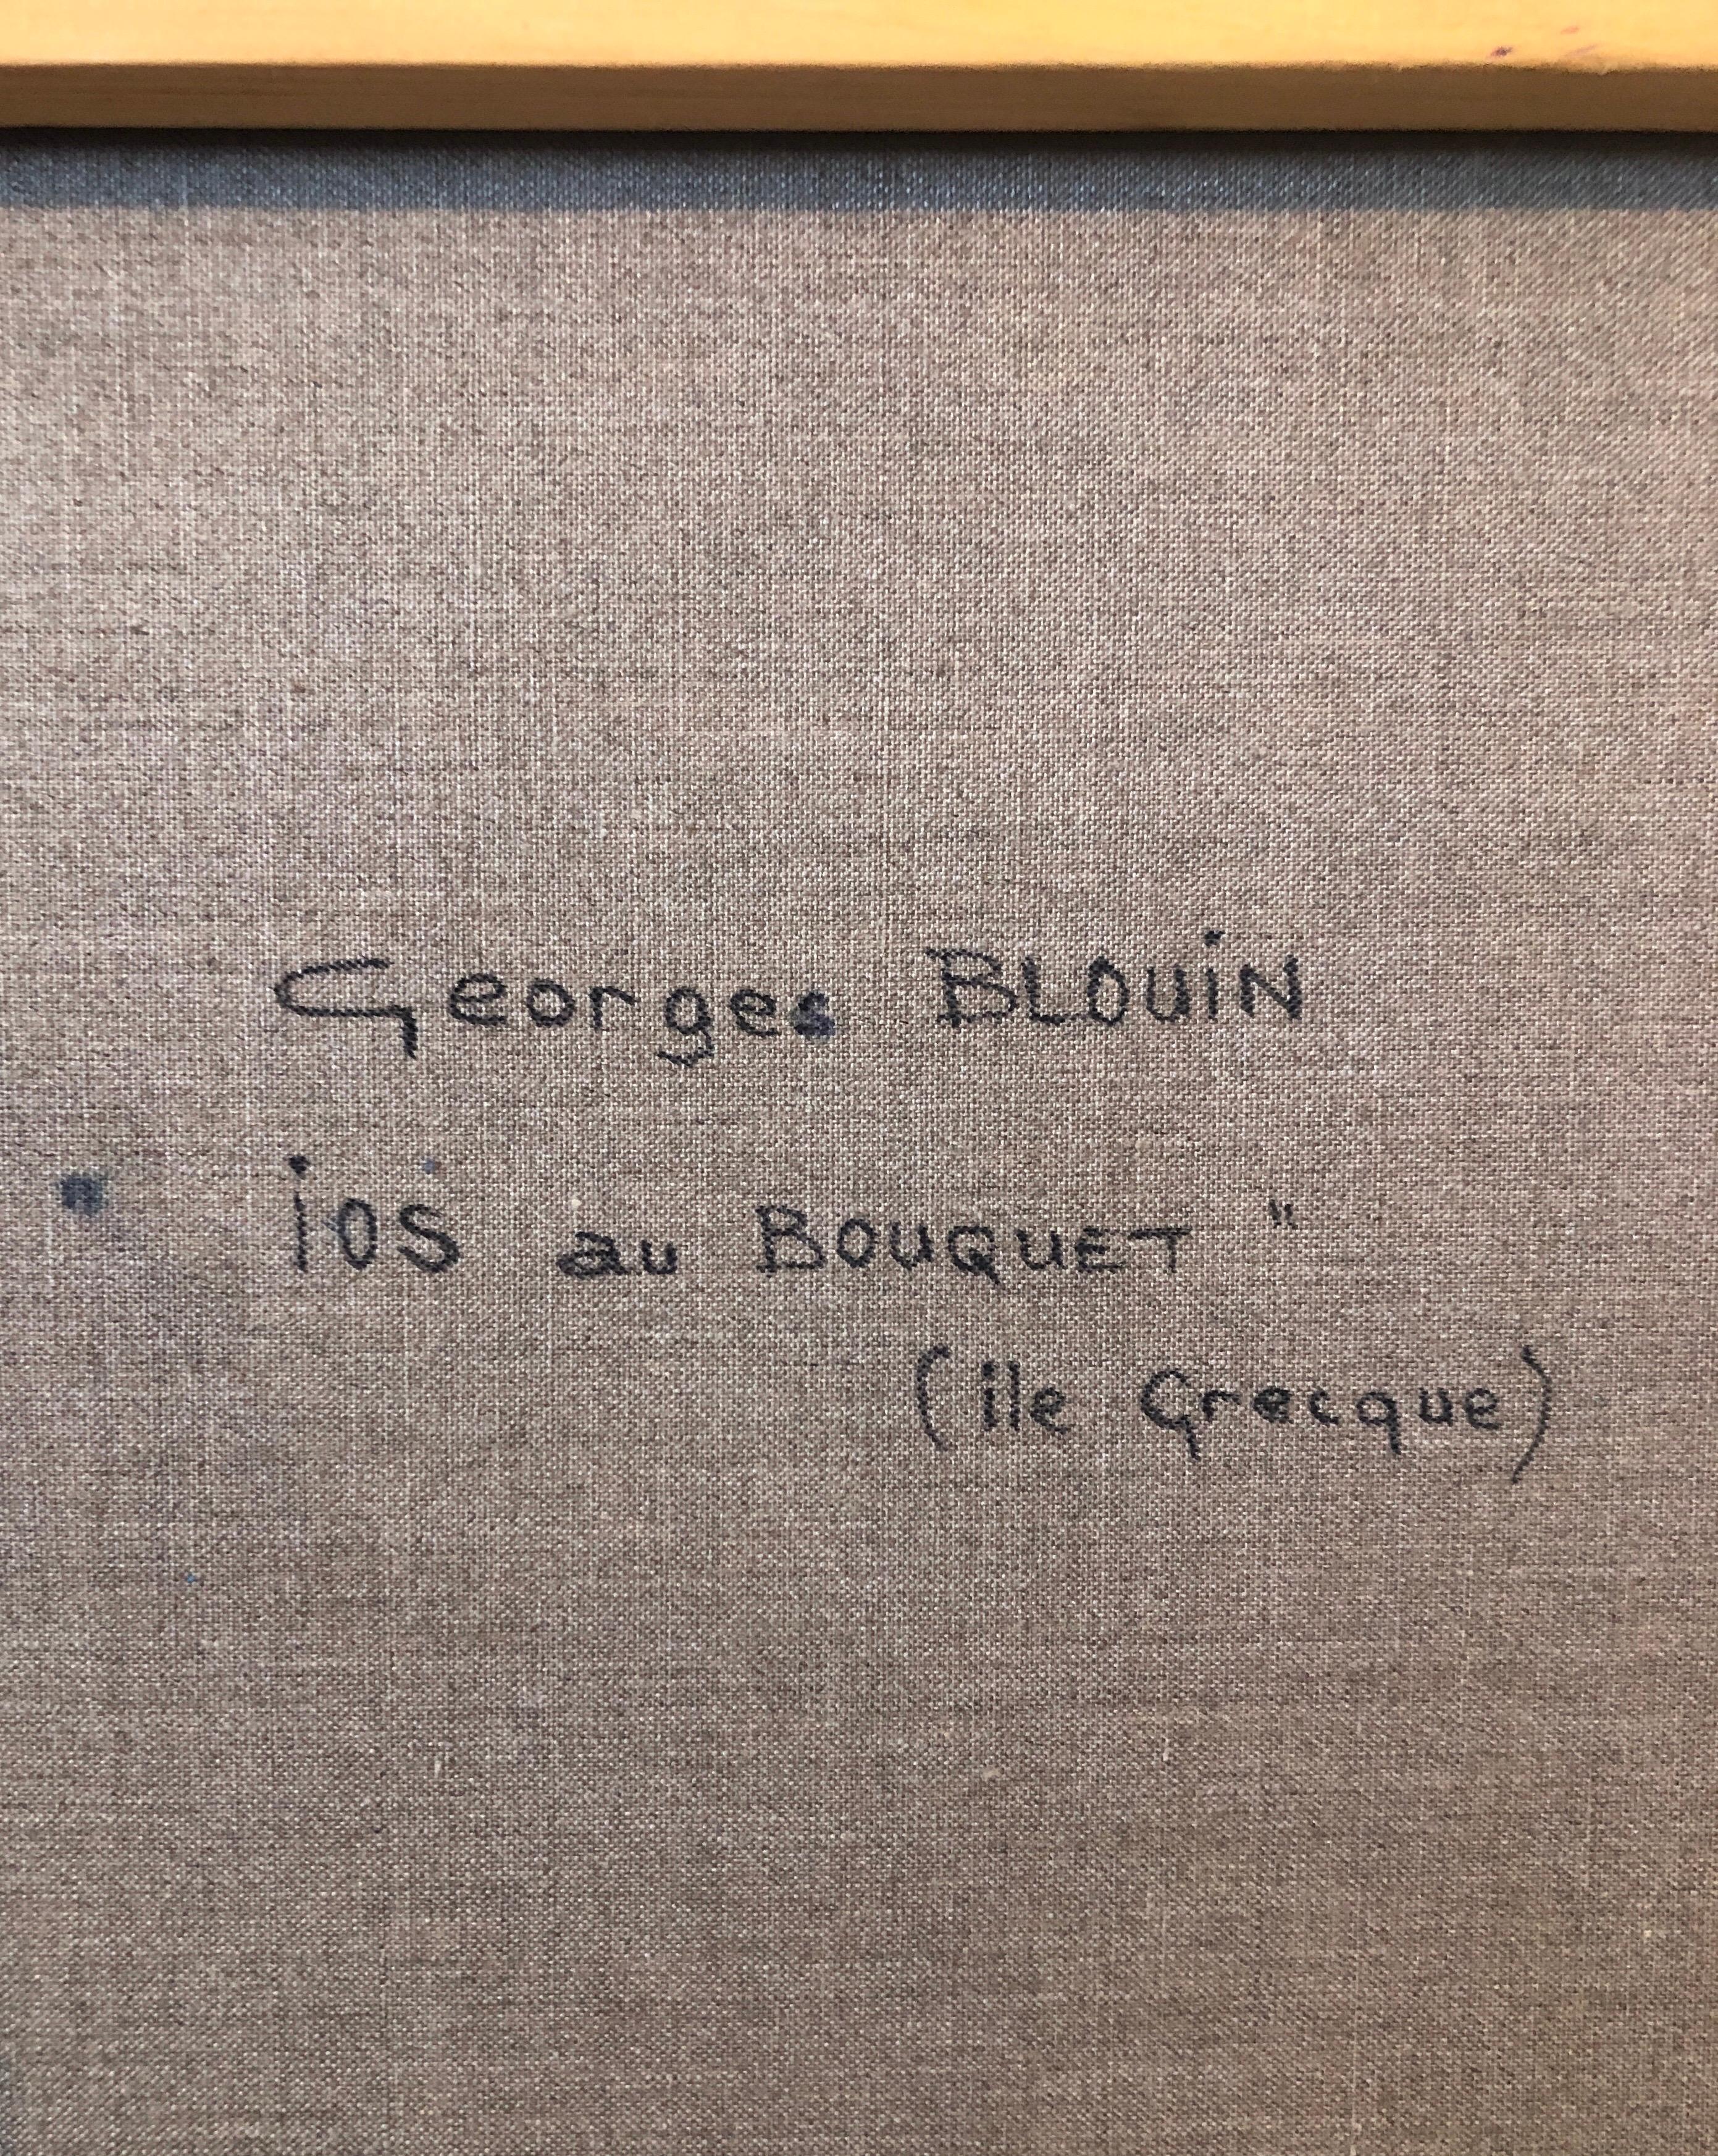 Ios au Bouquet, Ile Grecque

Georges Blouin (1928-2012), né dans le nord de la France. Il a fréquenté l'école des Beaux Arts d'Arras où il a étudié la peinture décorative. Georges Blouin a été membre du comité et du jury des Artistes